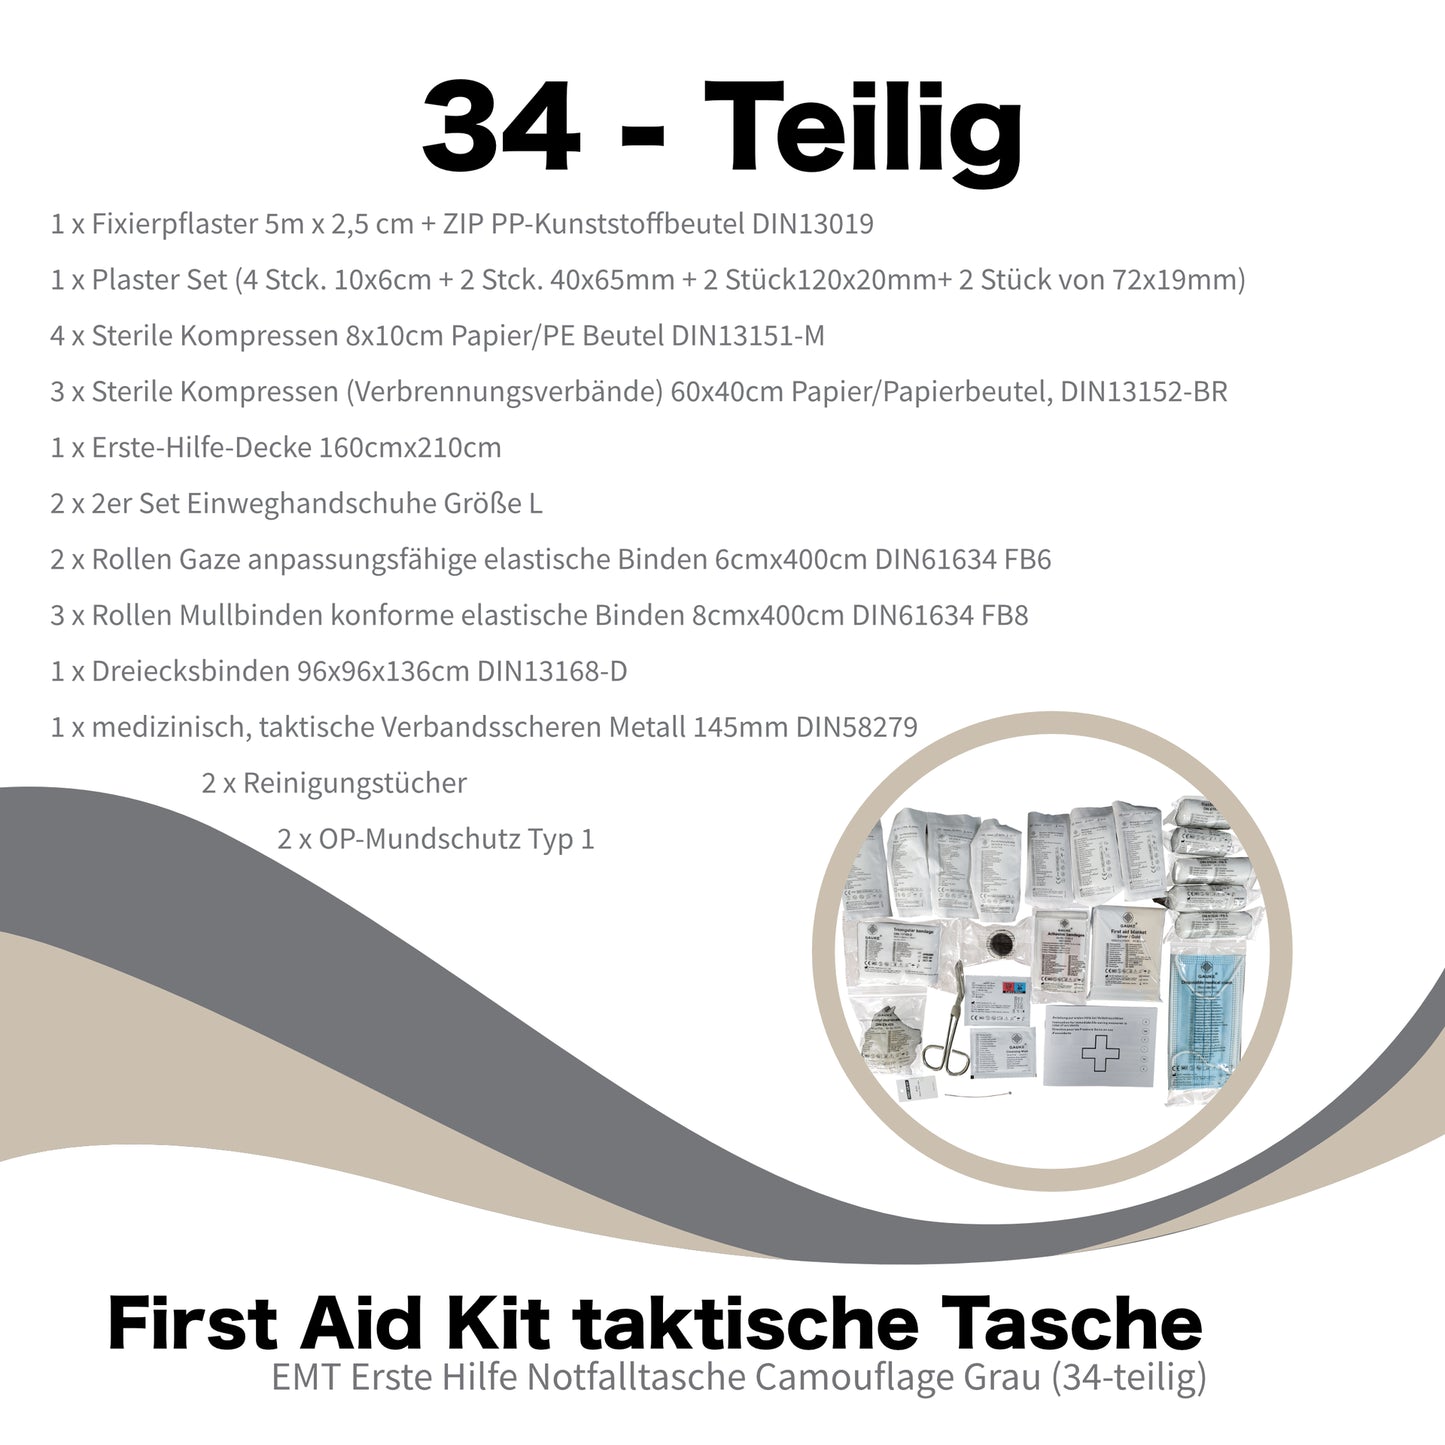 Ensiapupakkaus - 34 osaa - IFAK Kit - Hätäpakkaus/Hätäpakkaus - Ensiapulaukku